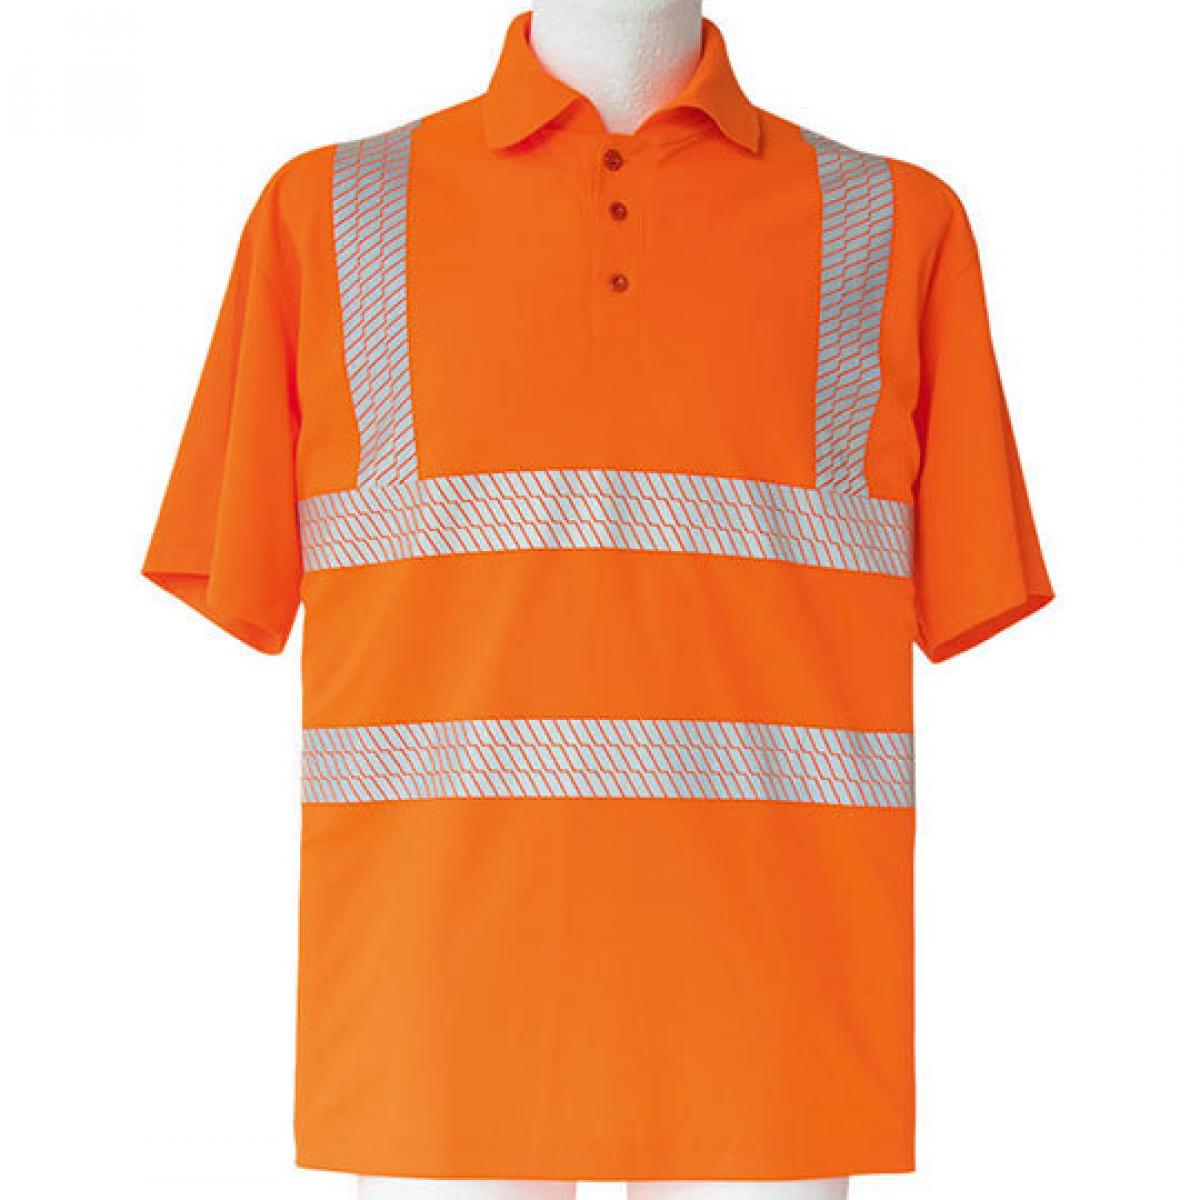 Hersteller: Korntex Herstellernummer: KXBRP Artikelbezeichnung: Hi-Viz Broken Reflective Polo Shirt EN ISO 20471 Farbe: Signal Orange